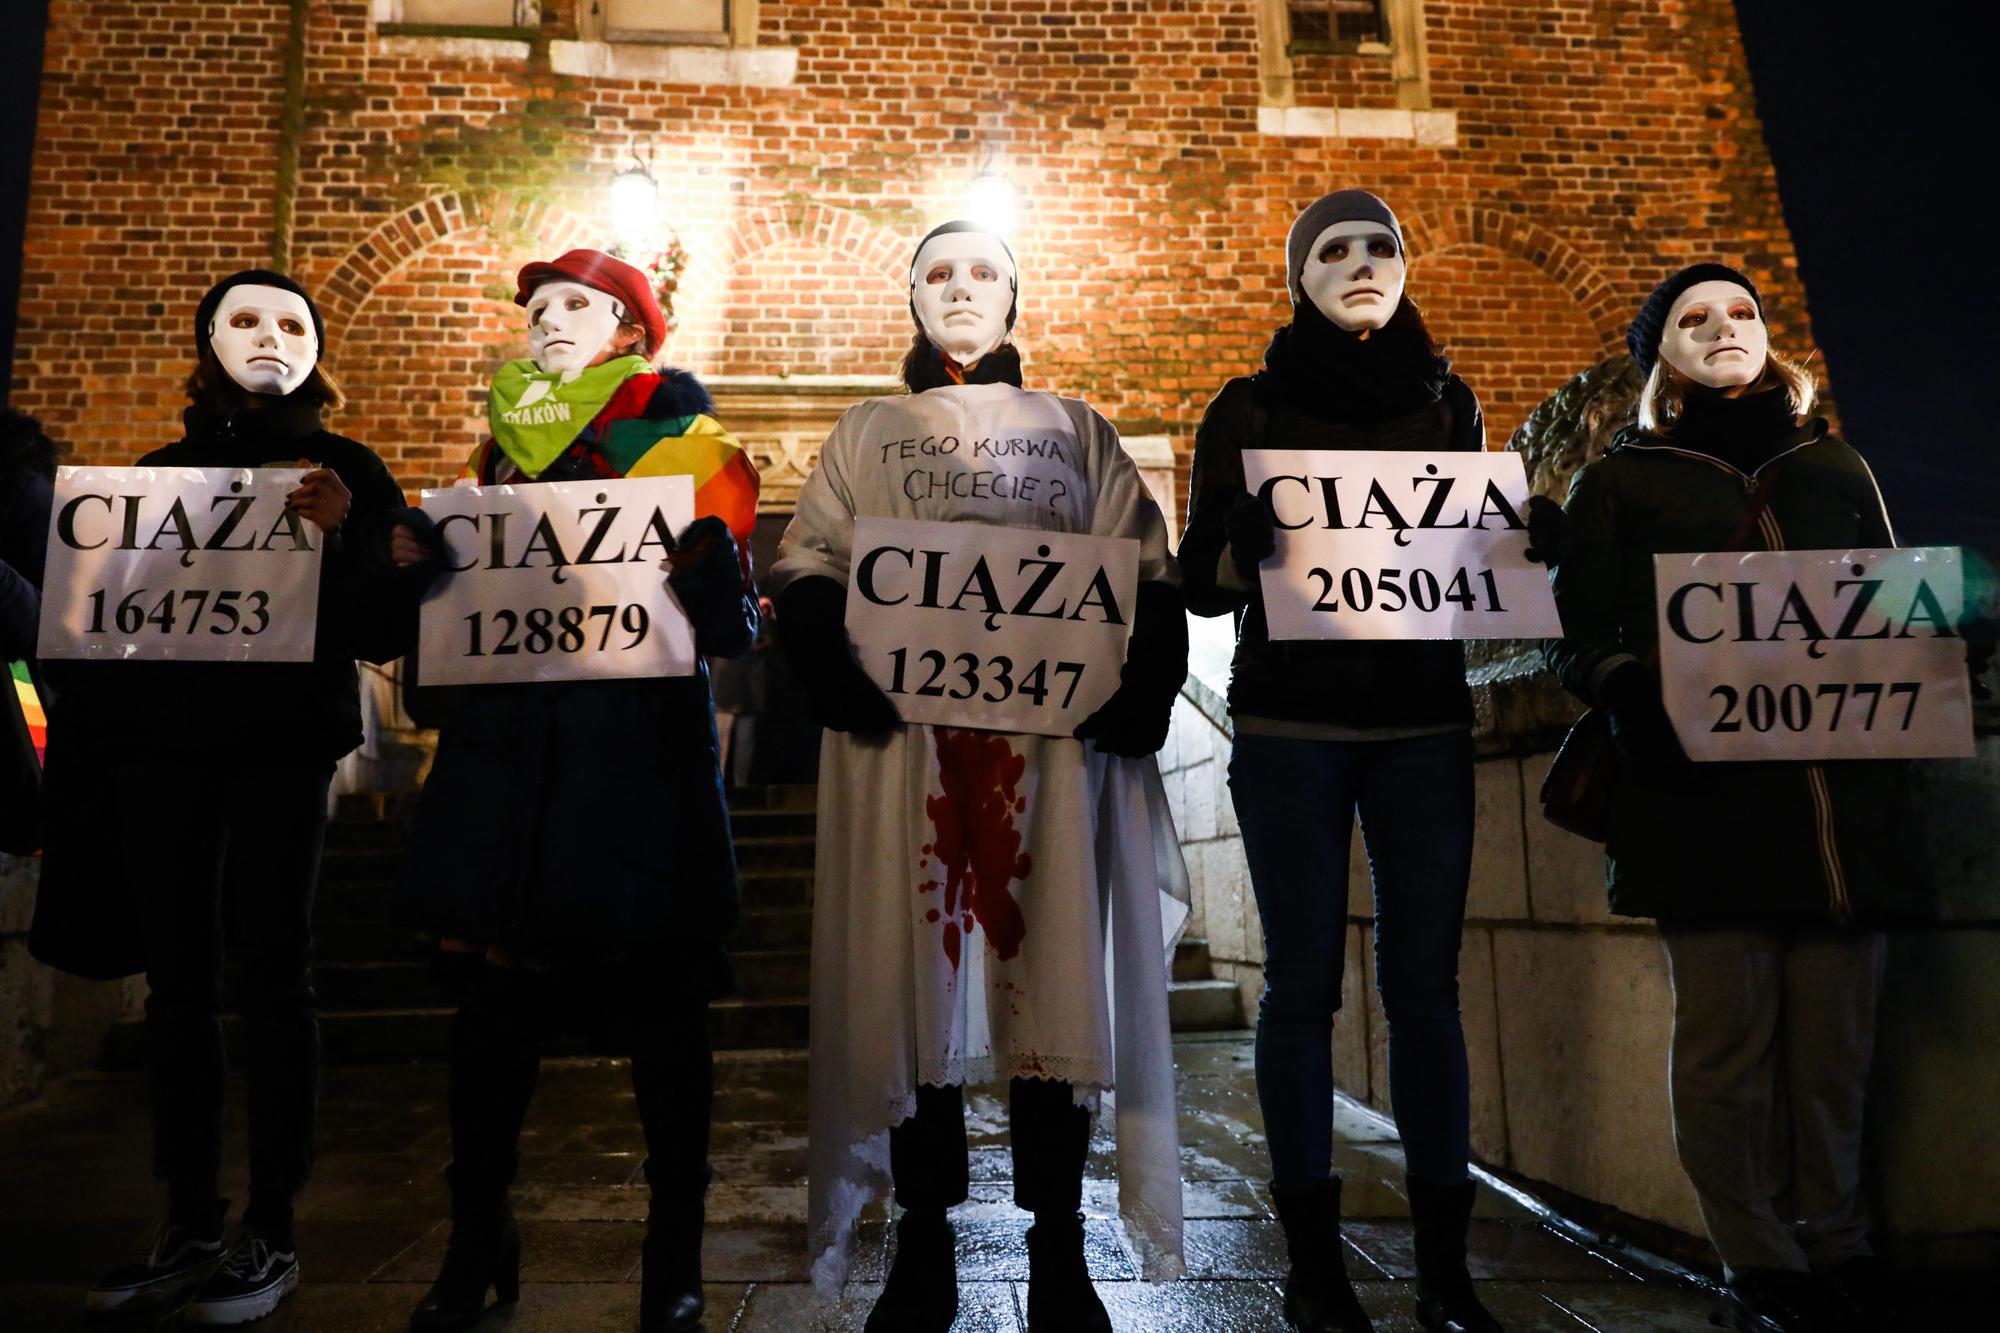 Des protestantes polonaises arborent des pancartes sur lesquelles il est écrit "Grossesse" avec un numéro, lors d'une manifestation contre le nouveau projet du gouvernement le 1er décembre à Cracovie. [AFP - Beata Zawrzel / NurPhoto]